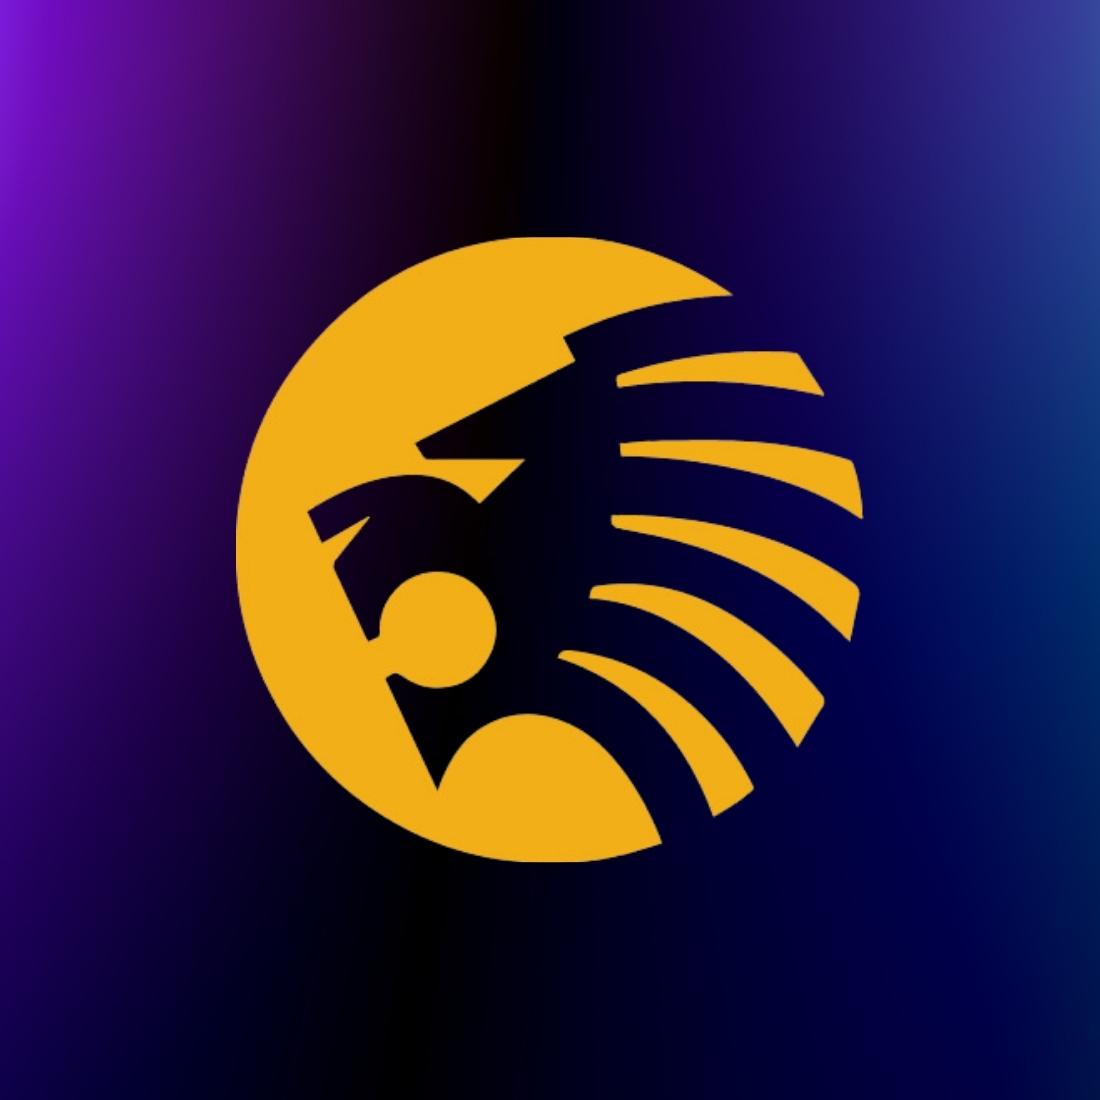 Lion logo design (business logo) preview image.